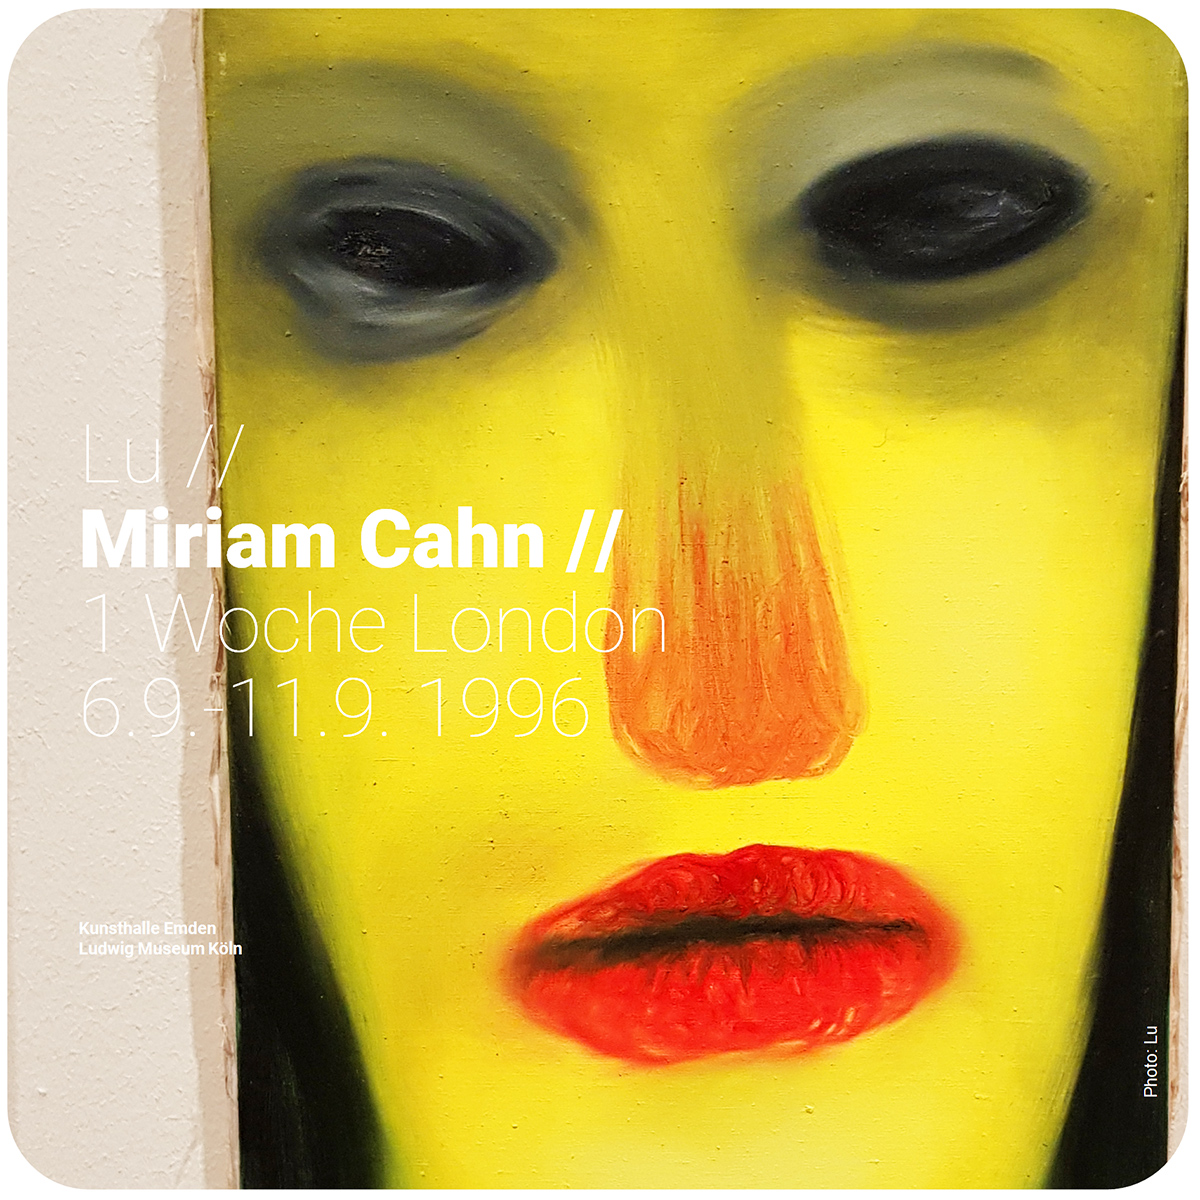 Lu // Miriam Cahn // 1 Woche London, 6.9.-11.9. 1996